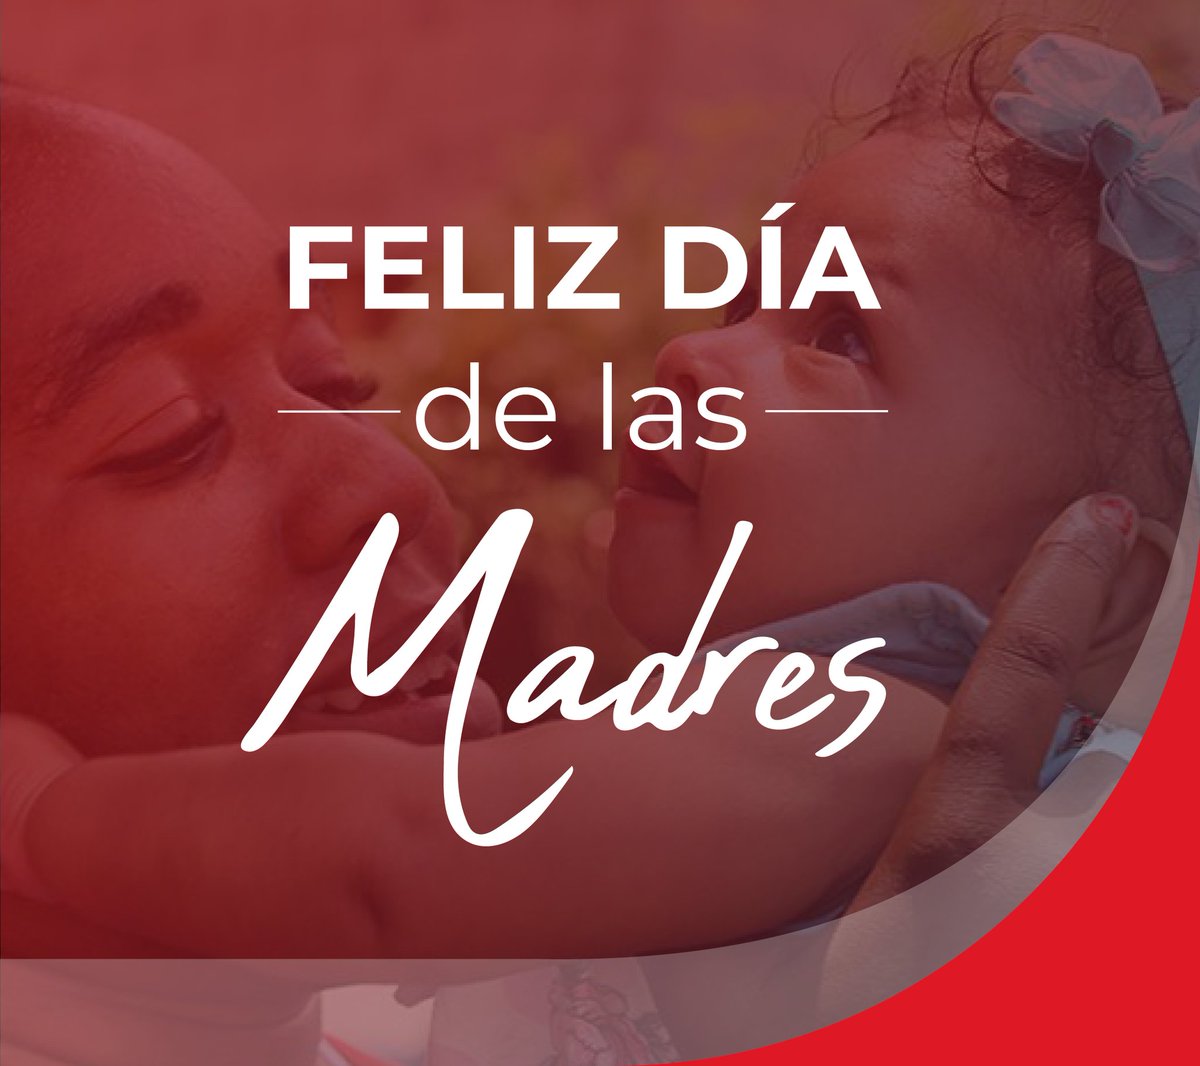 'La madre, esté lejos o cerca de nosotros, es el sostén de nuestra vida', expresó José Martí. A ellas, hacedoras de imposibles con su ternura y amor infinito les agradecemos. #FelizDíaDeLasMadres #Cuba